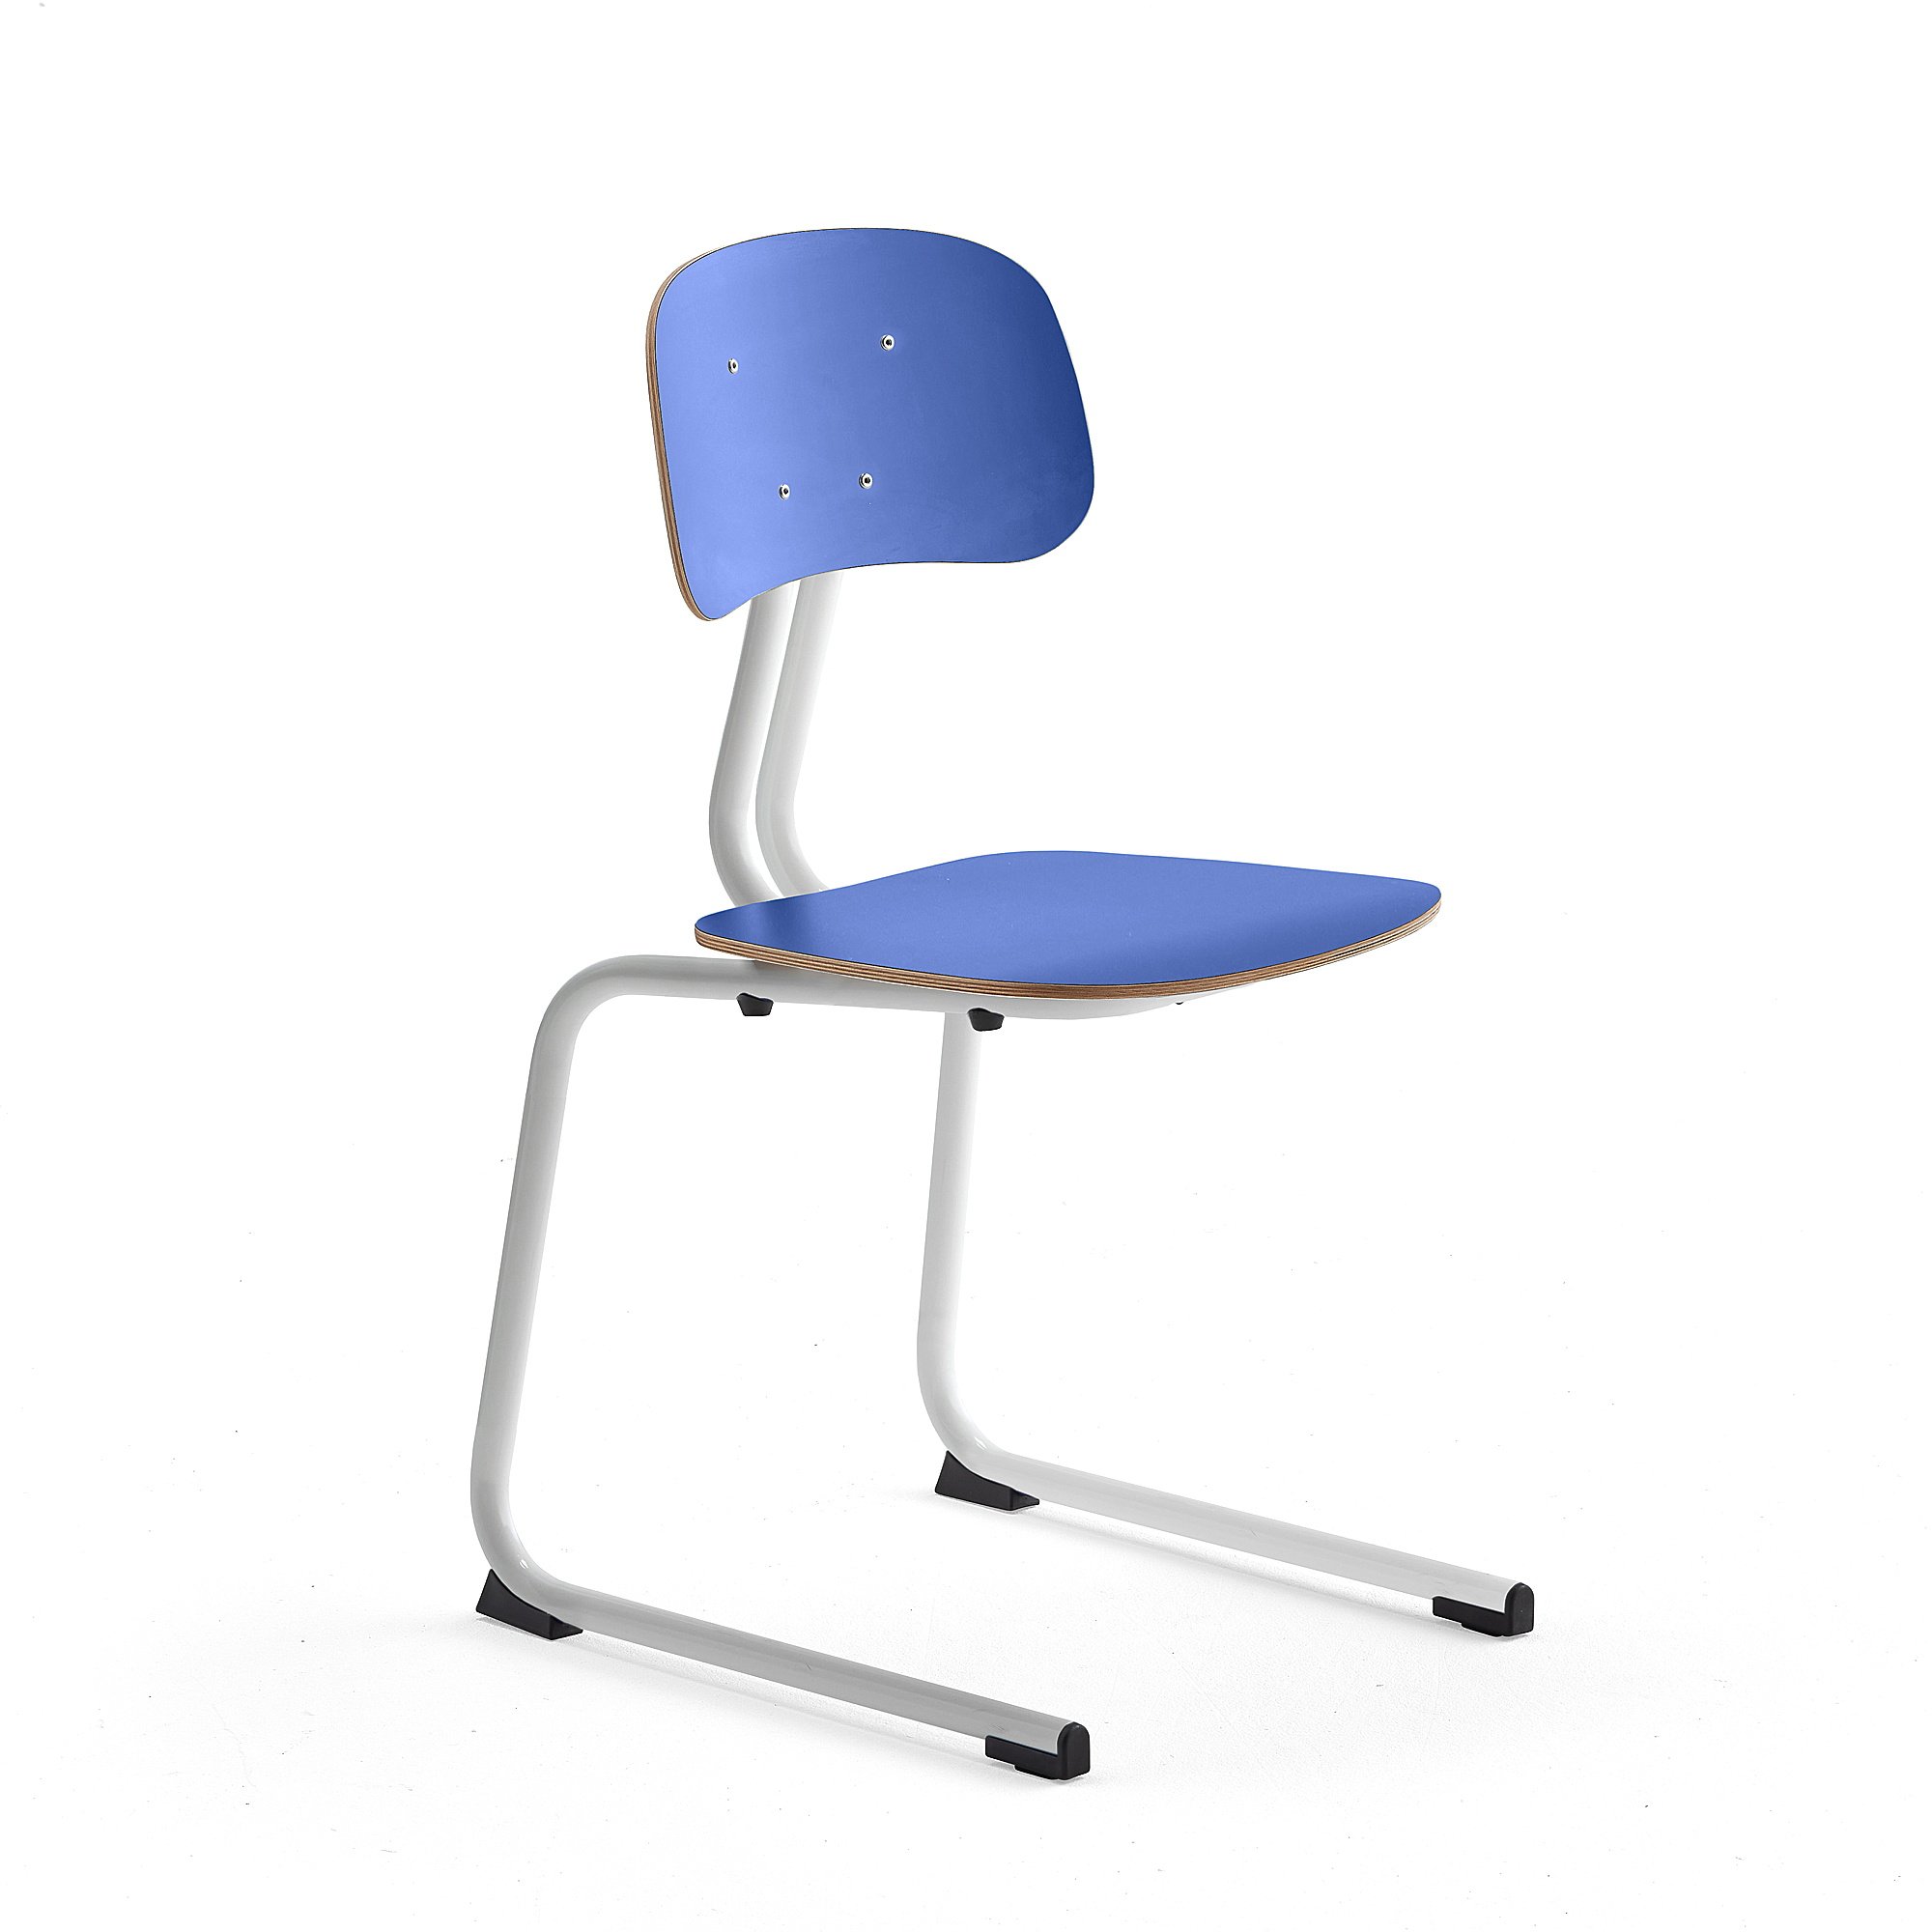 Školní židle YNGVE, ližinová podnož, výška 460 mm, bílá/modrá